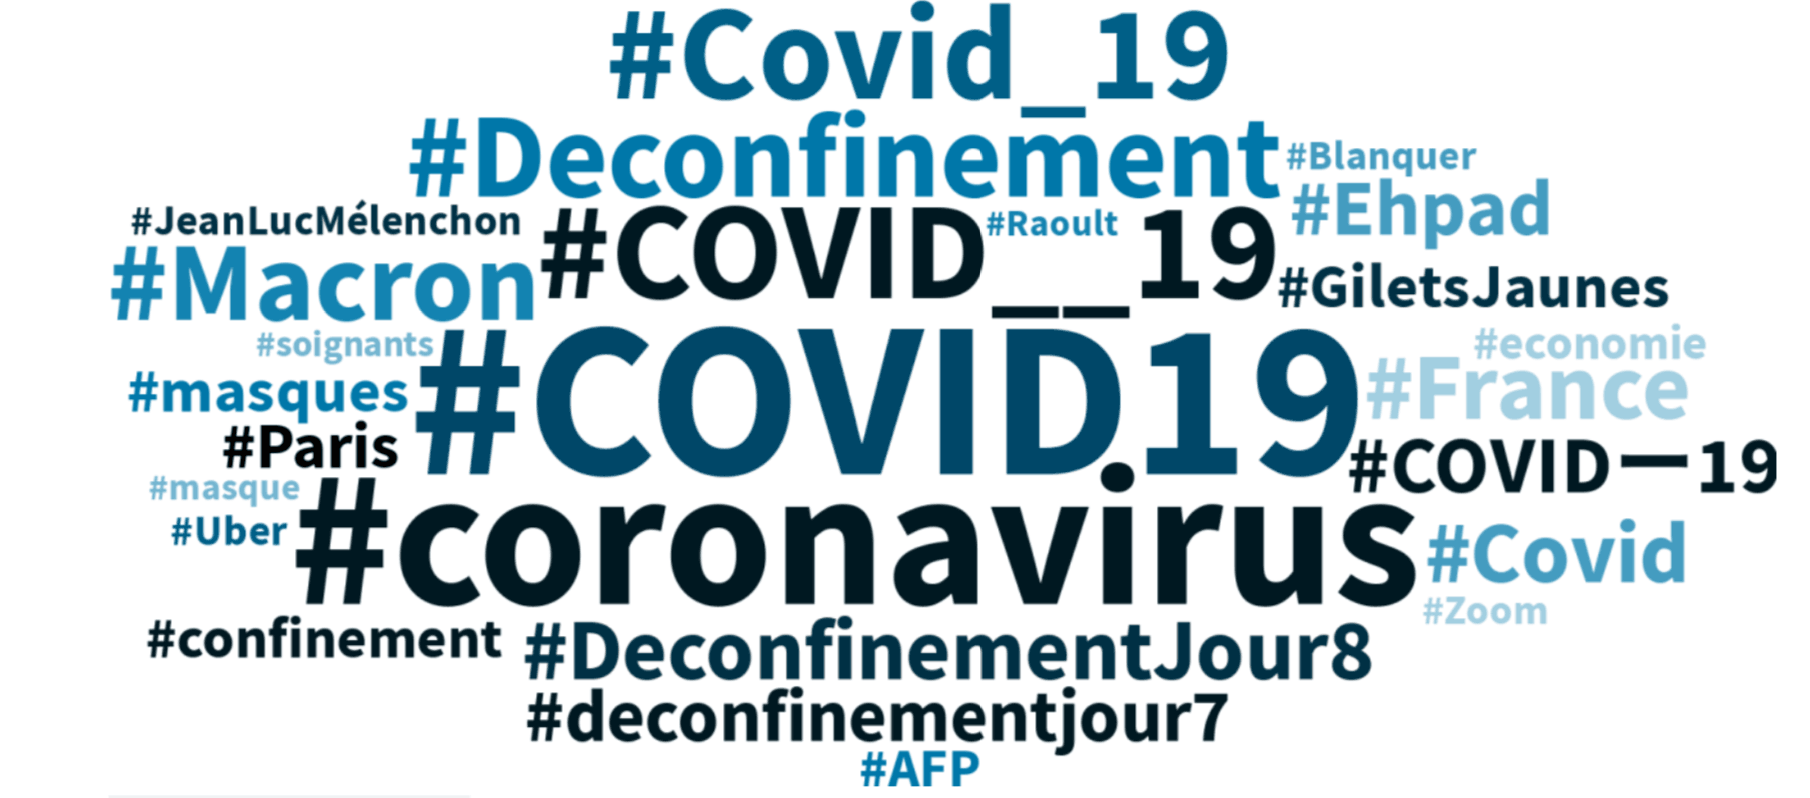 Les hashtags en vogue en français depuis 24 heures. (Crédit: Talkwalker)